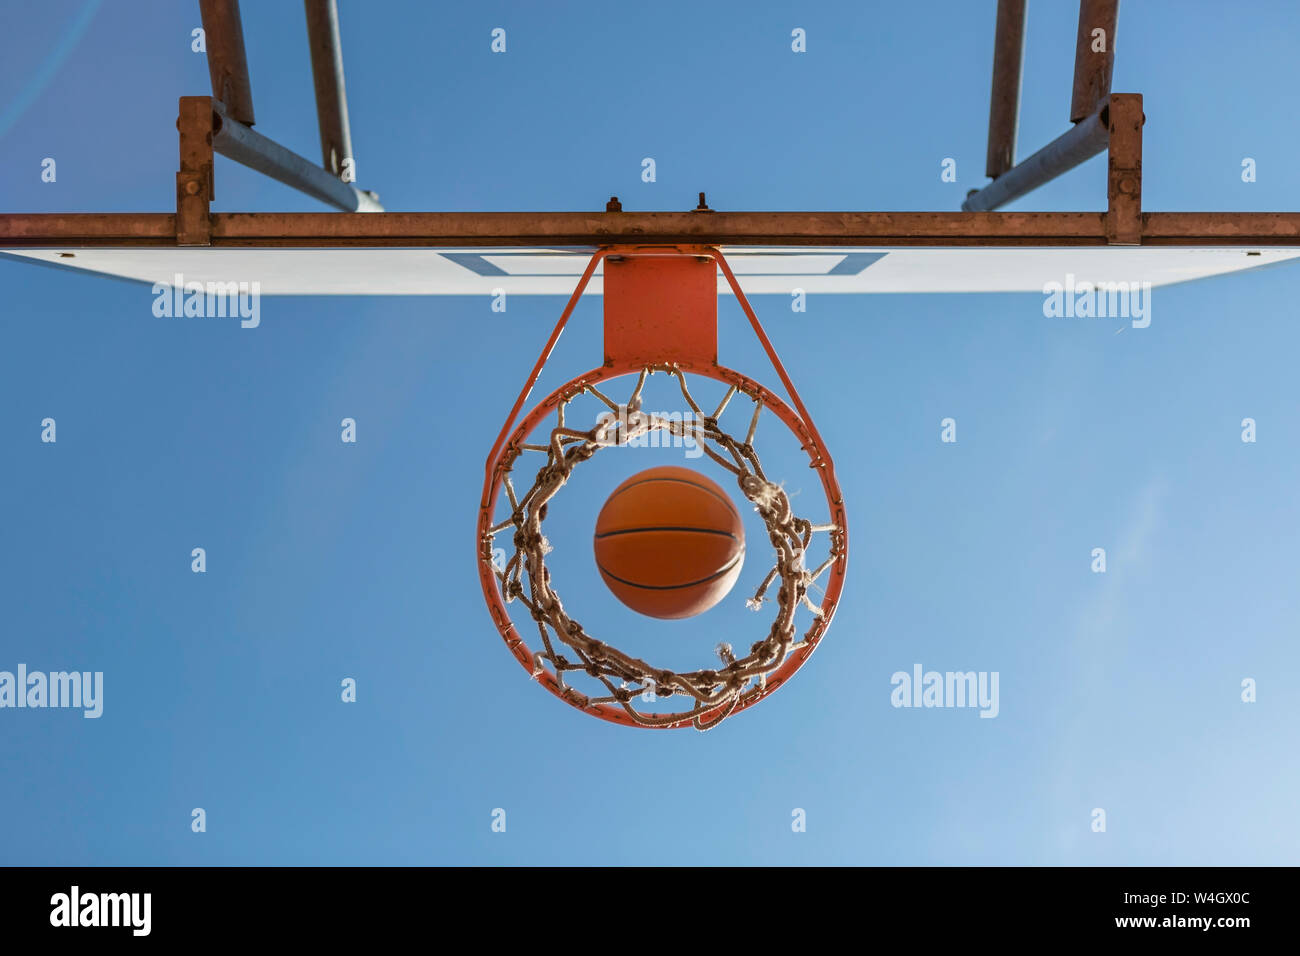 La pallacanestro e hoop, cielo blu, vista verso l'alto Foto Stock